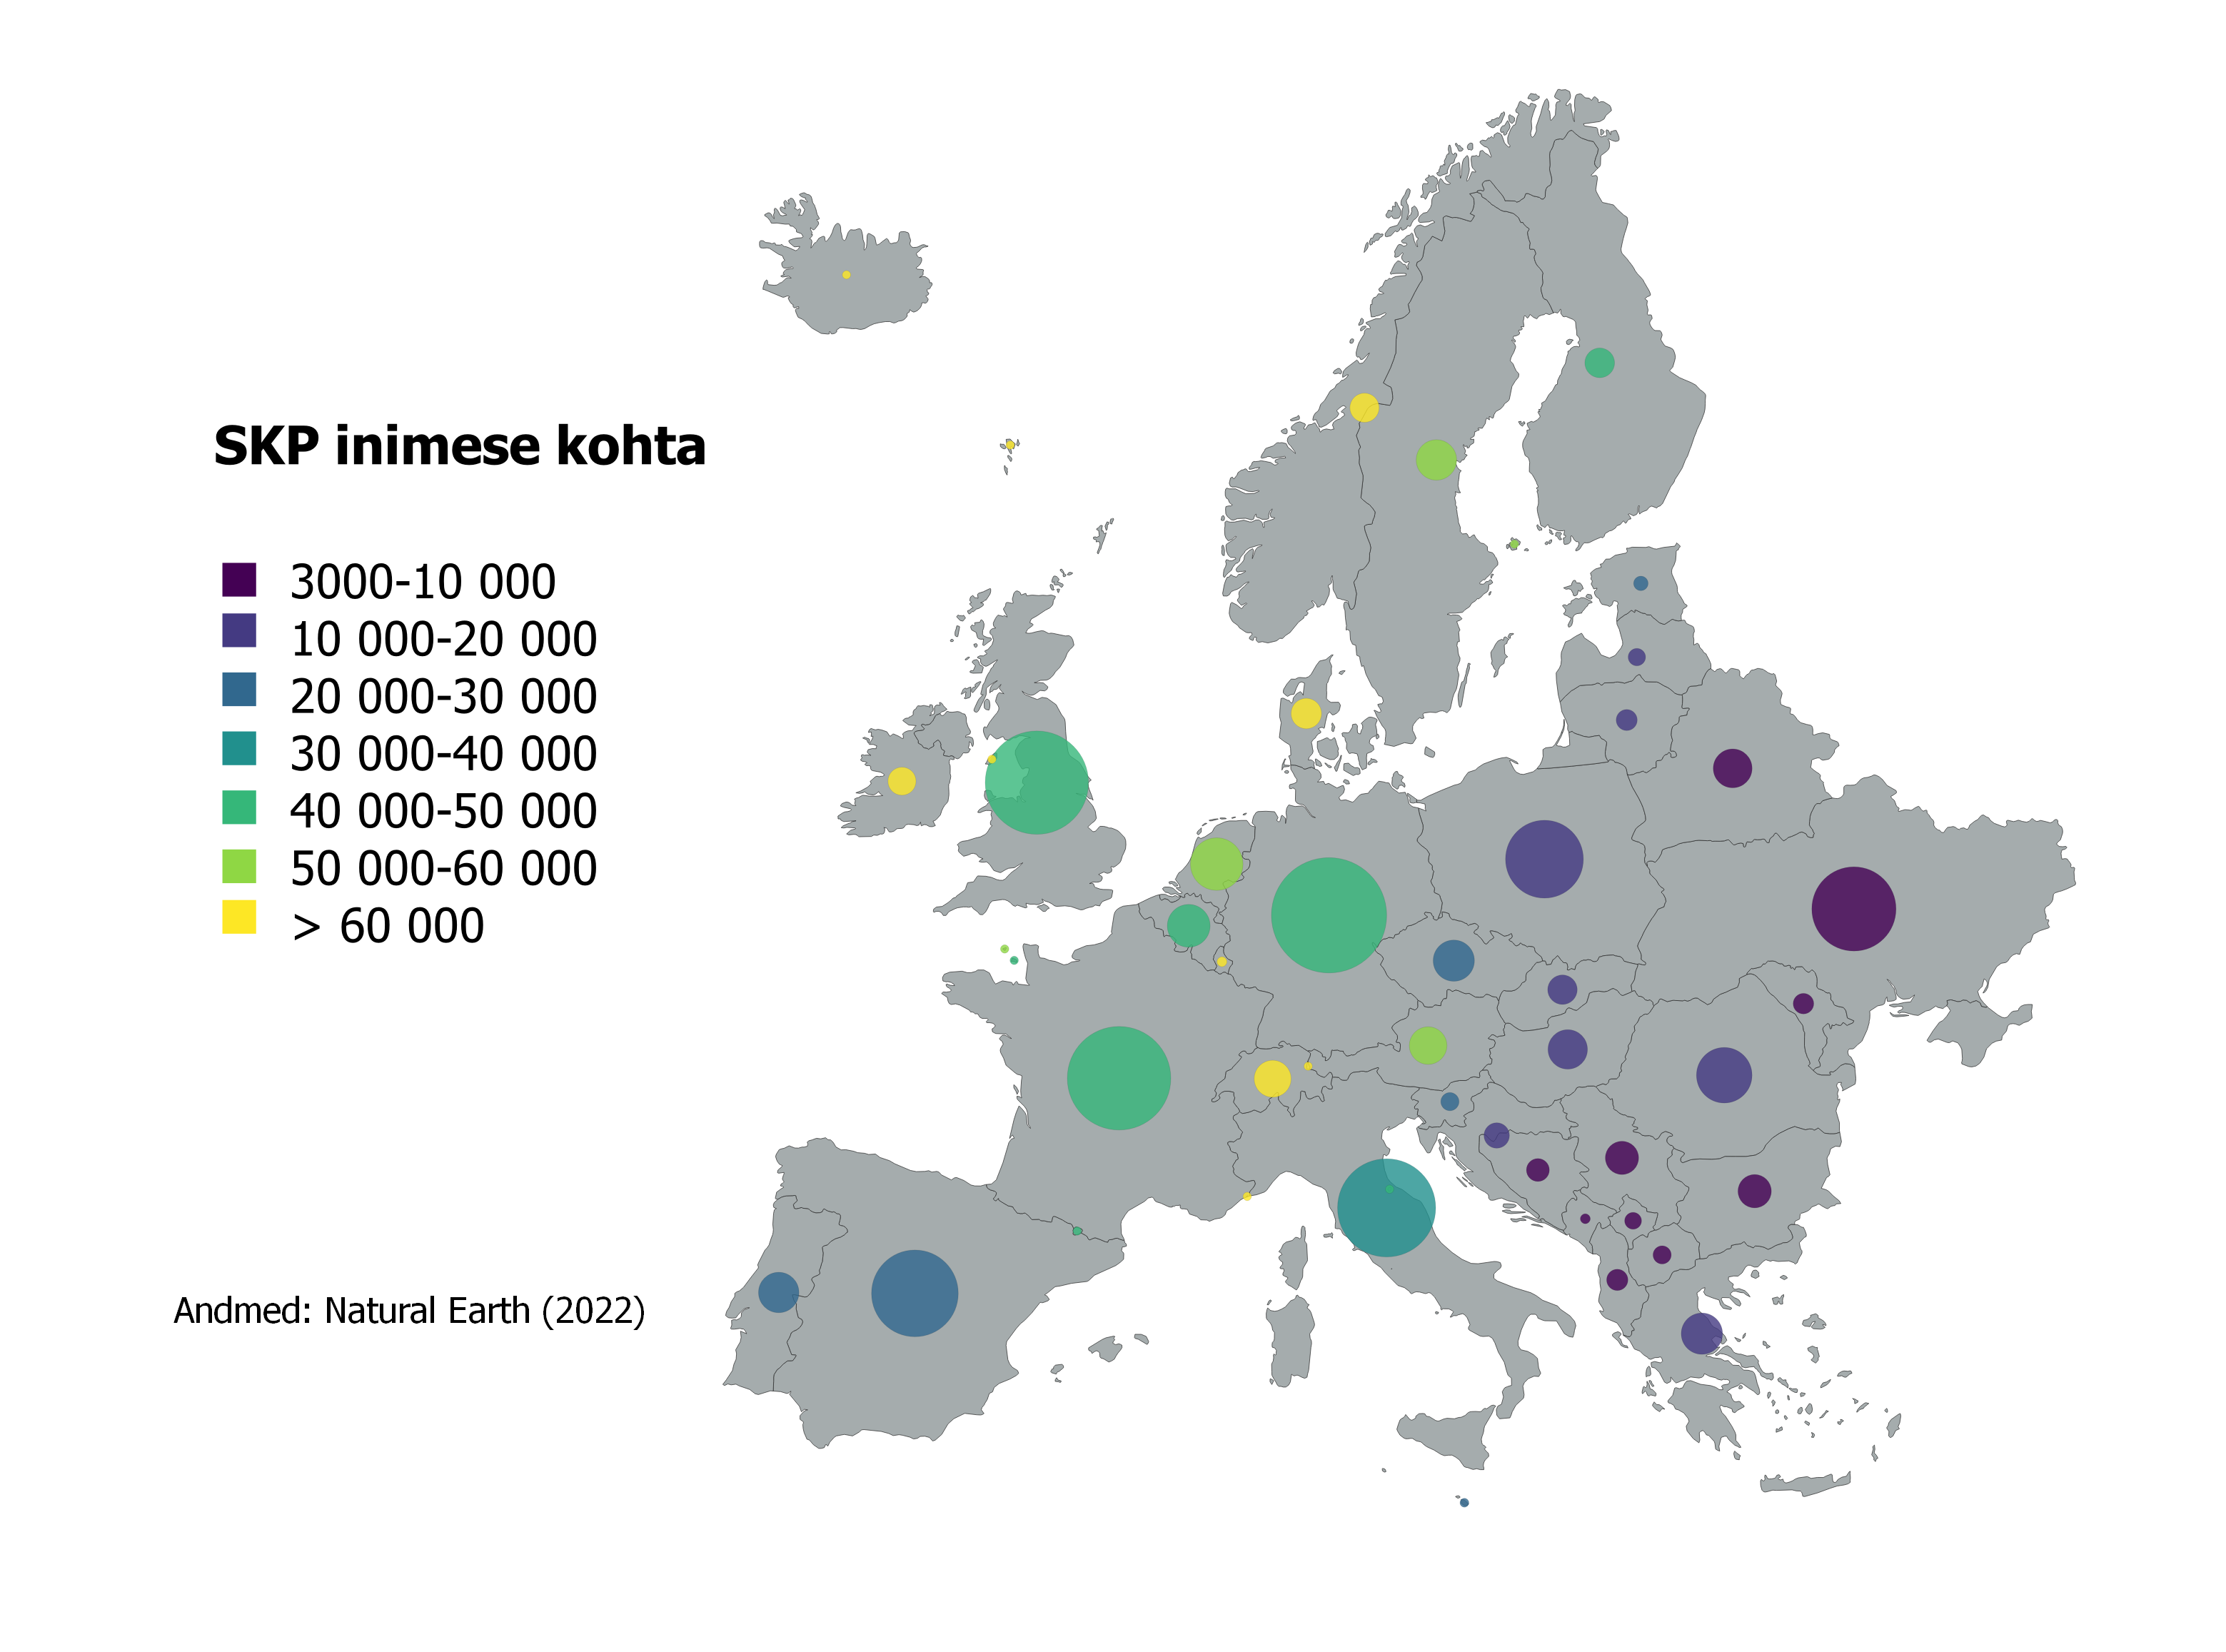 SKP inimese kohta Euroopa riikides diagrammidena. Ringi suurus näitab rahvaarvu.